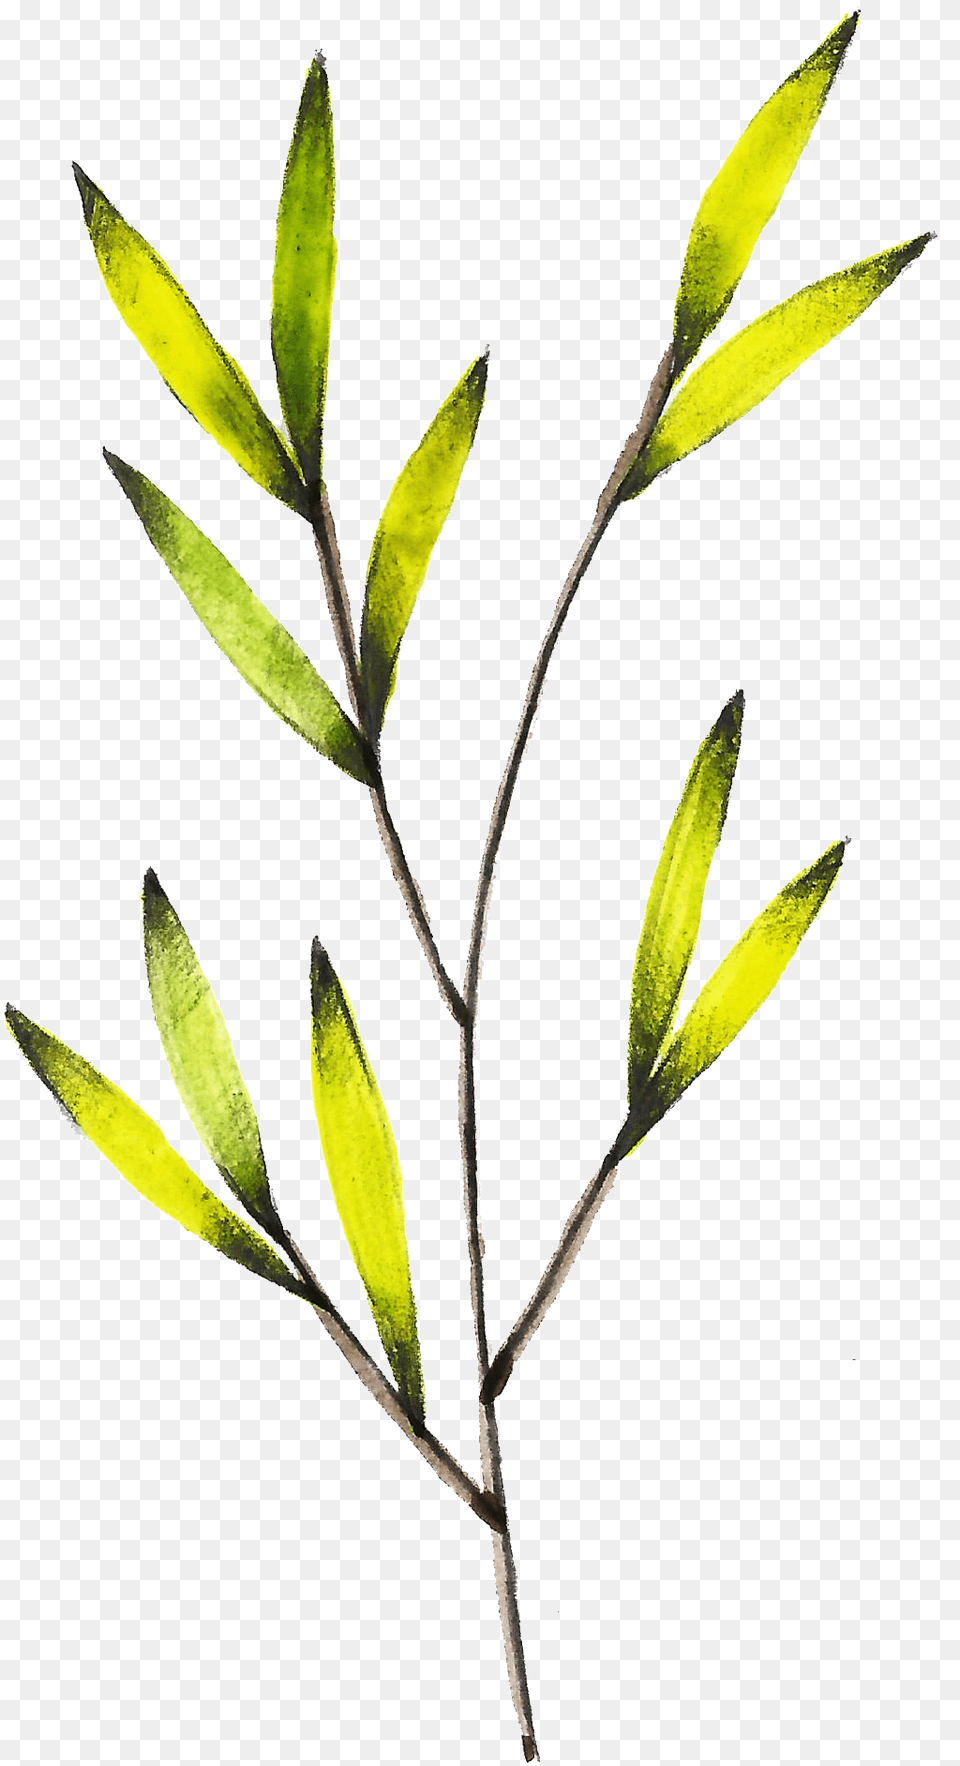 Transparente De Color Amarillo Brillante Ramas De Flores, Leaf, Plant, Tree, Herbal Free Png